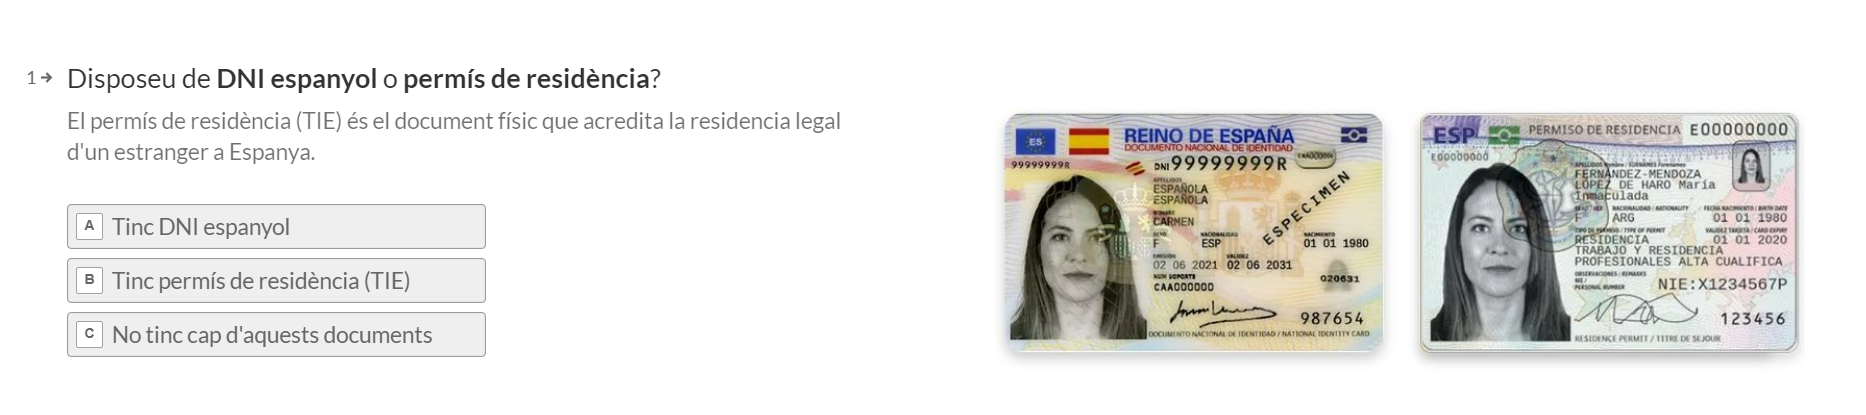 Pregunta si dispone de DNI español o permiso de residencia